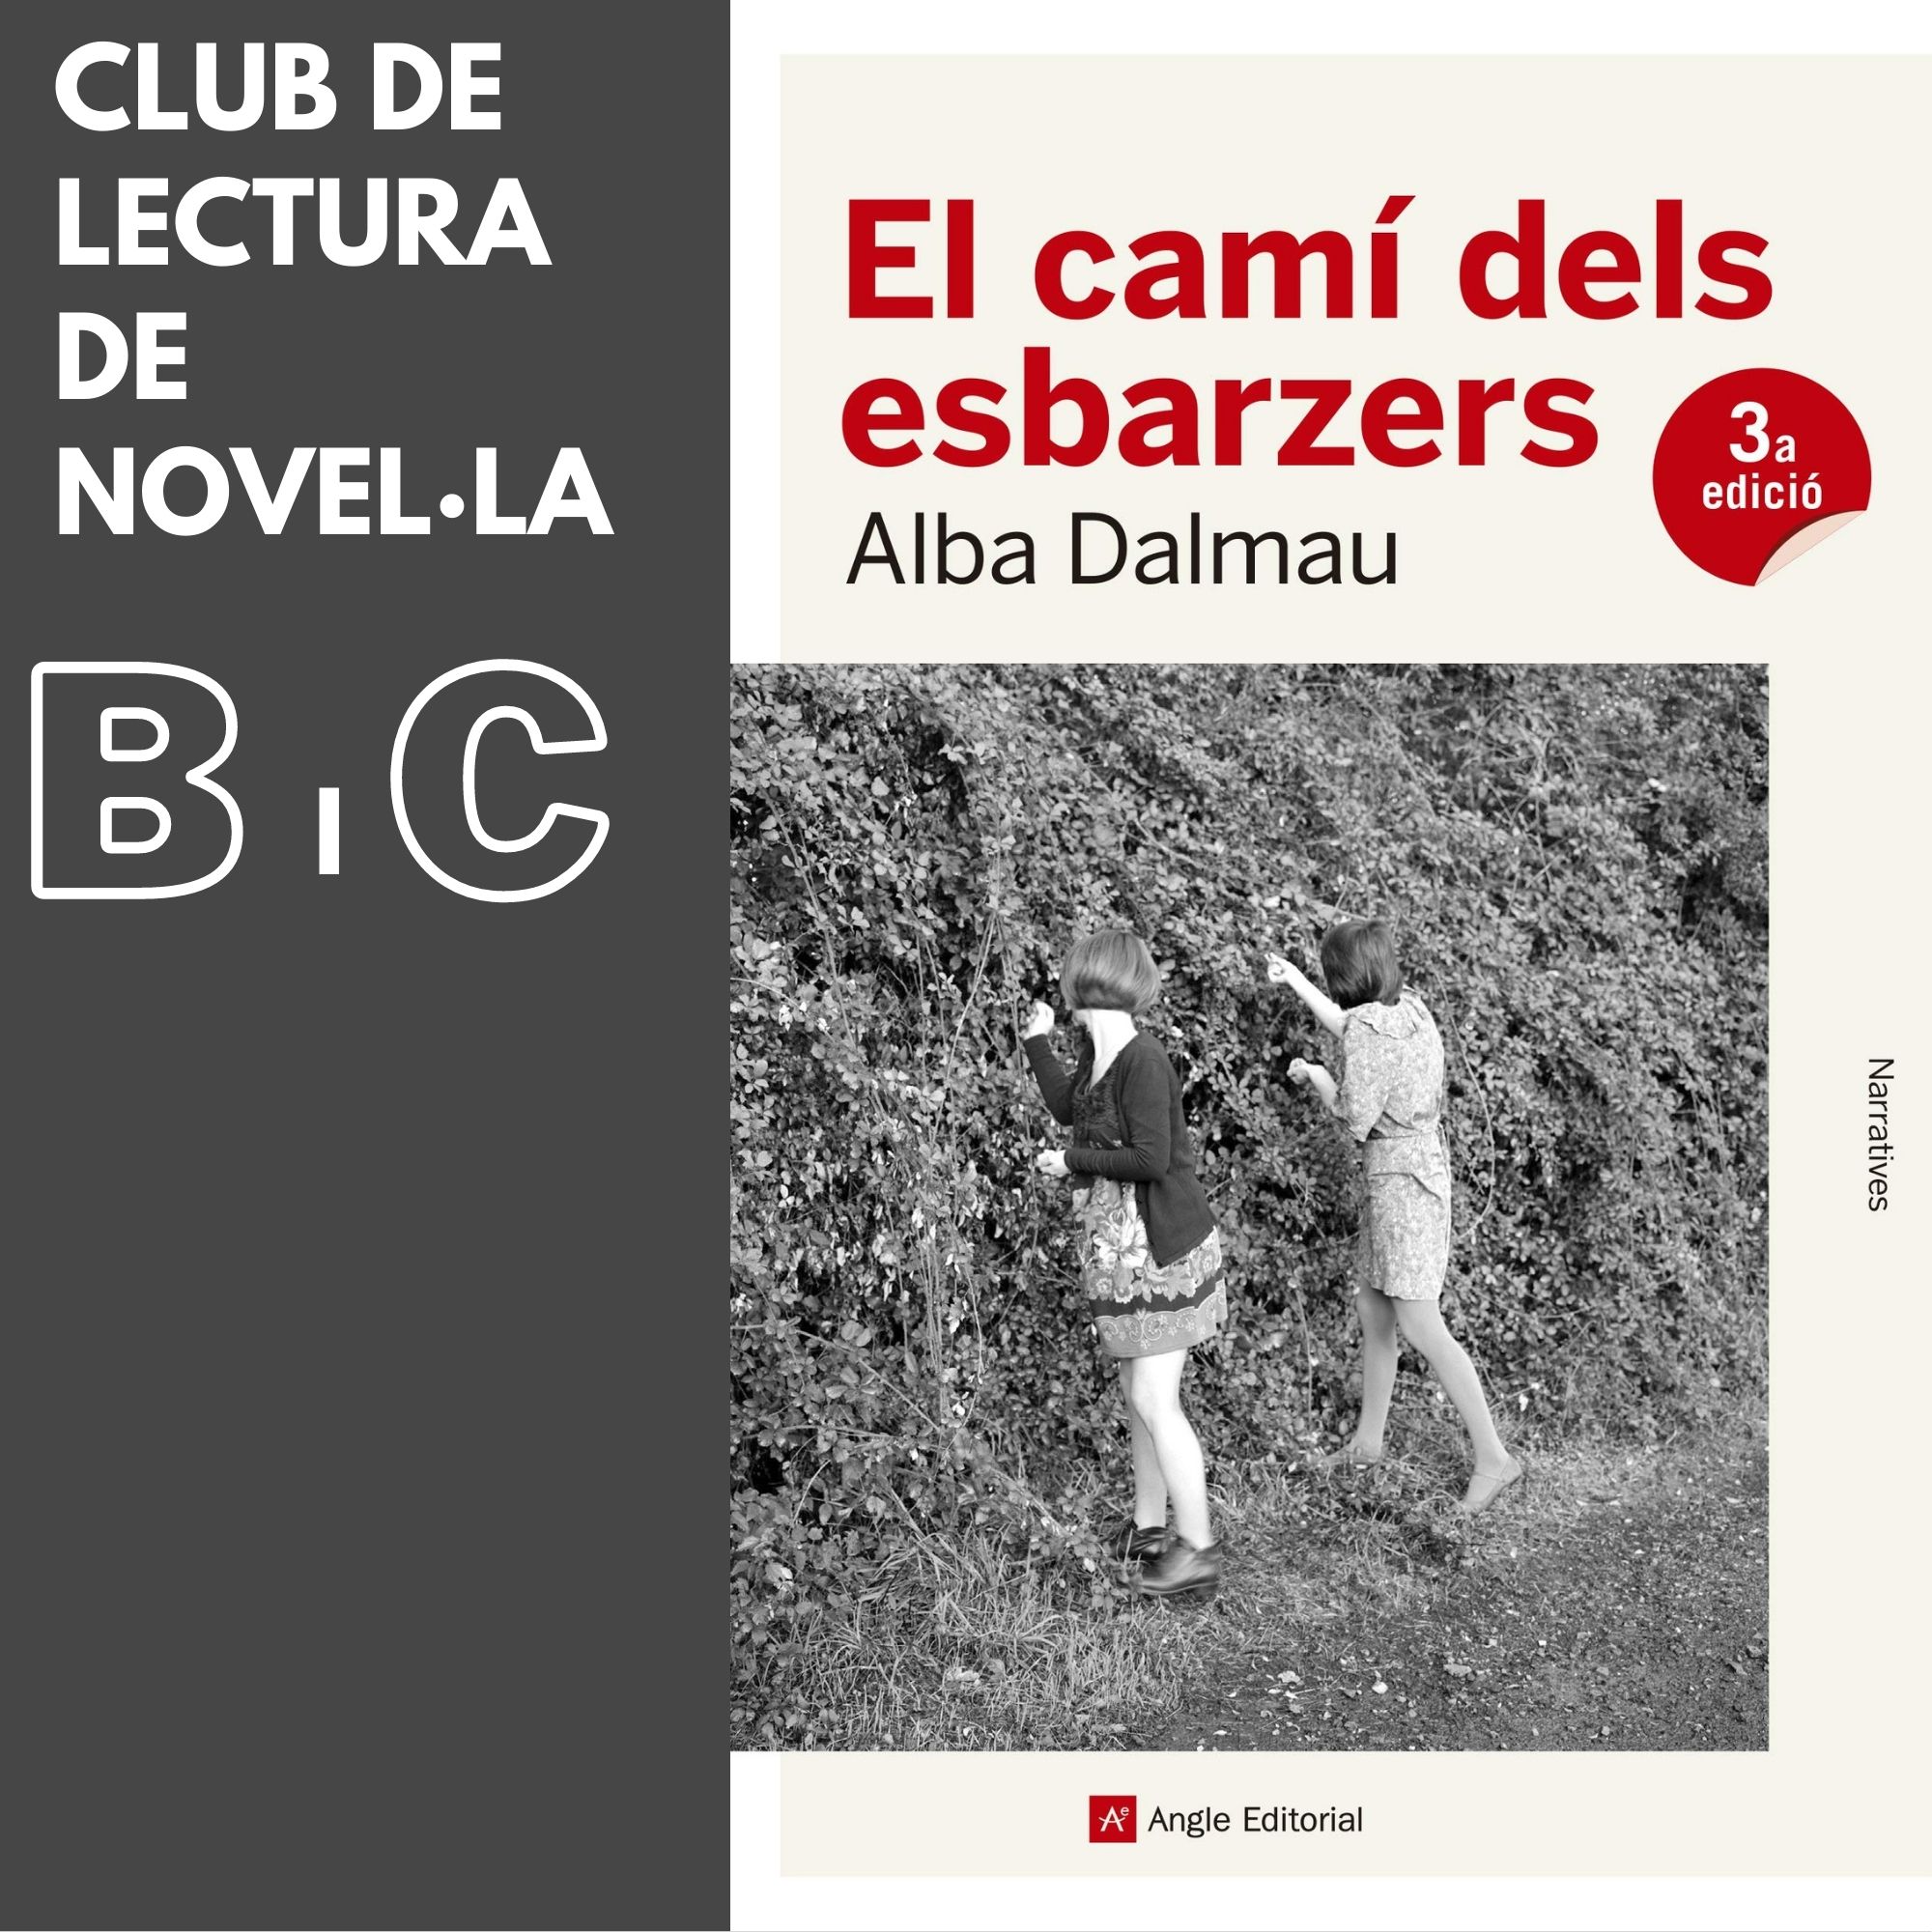 Club de lectura de Novel·la  B  i  C :   “El camí dels esbarzers” d’Alba Dalmau